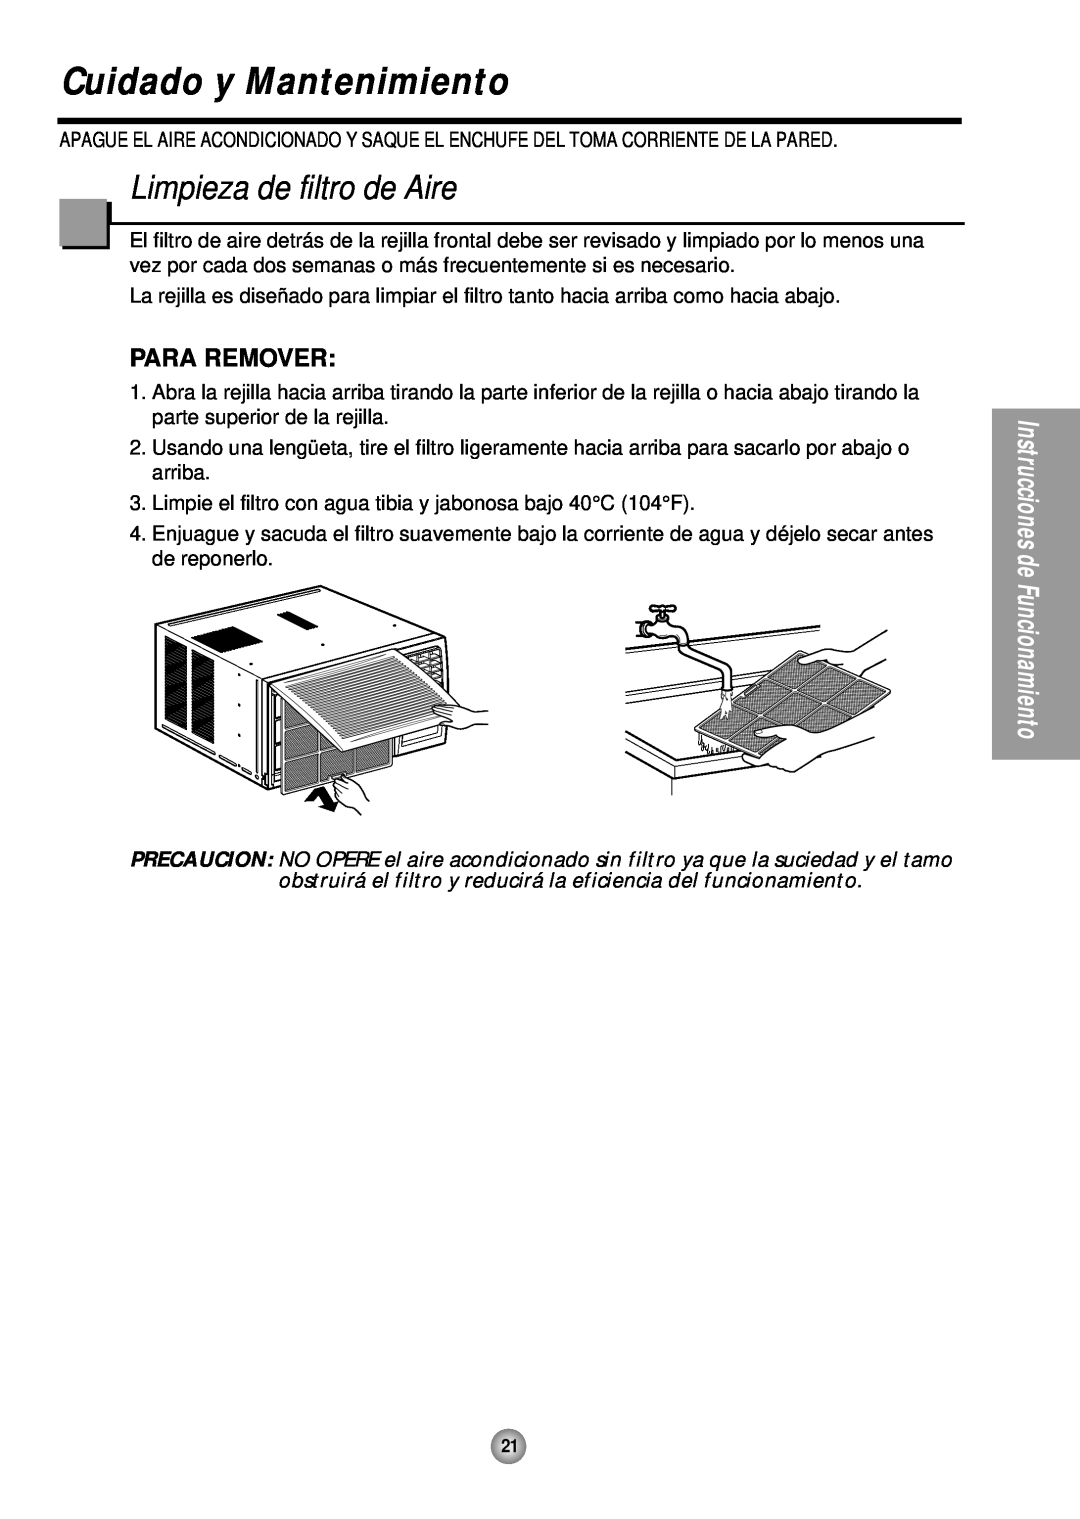 Quasar HQ-2081TH manual Cuidado y Mantenimiento, Limpieza de filtro de Aire, Para Remover 